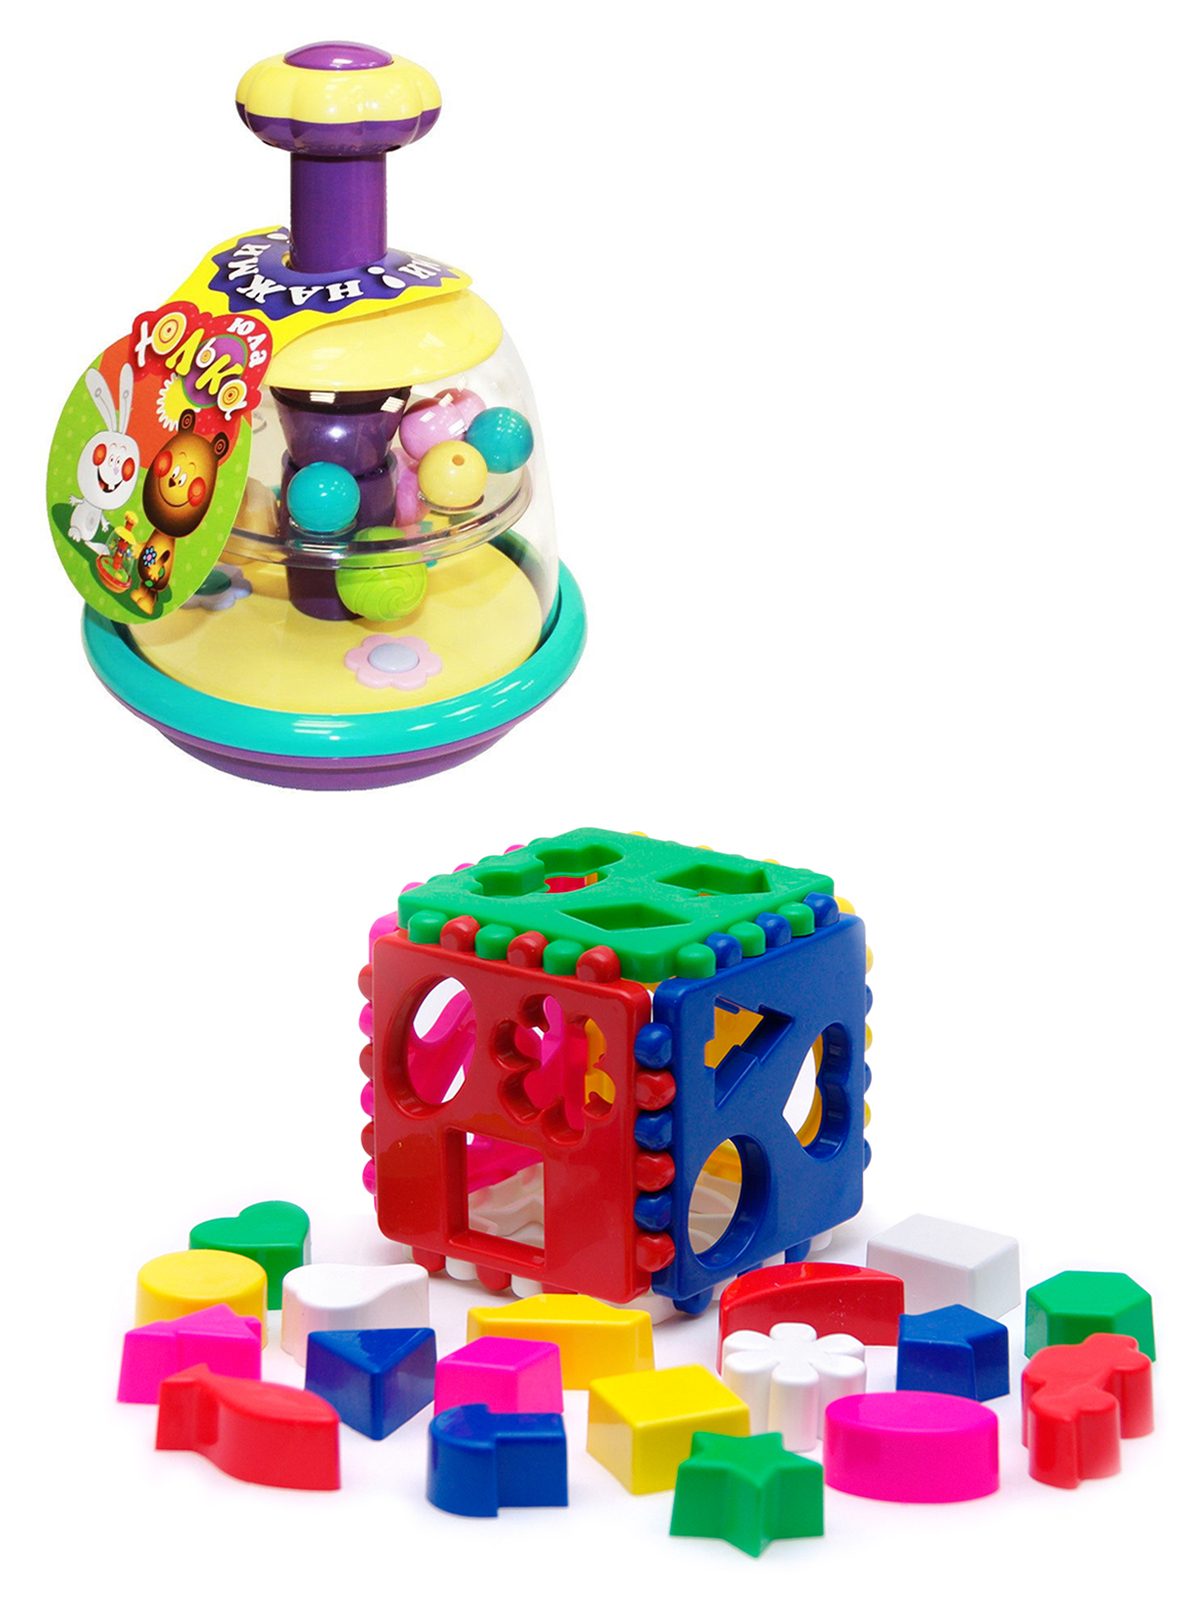 Развивающие игрушки Биплант Юла Юлька пастельные цвета + Сортер Кубик логический большой